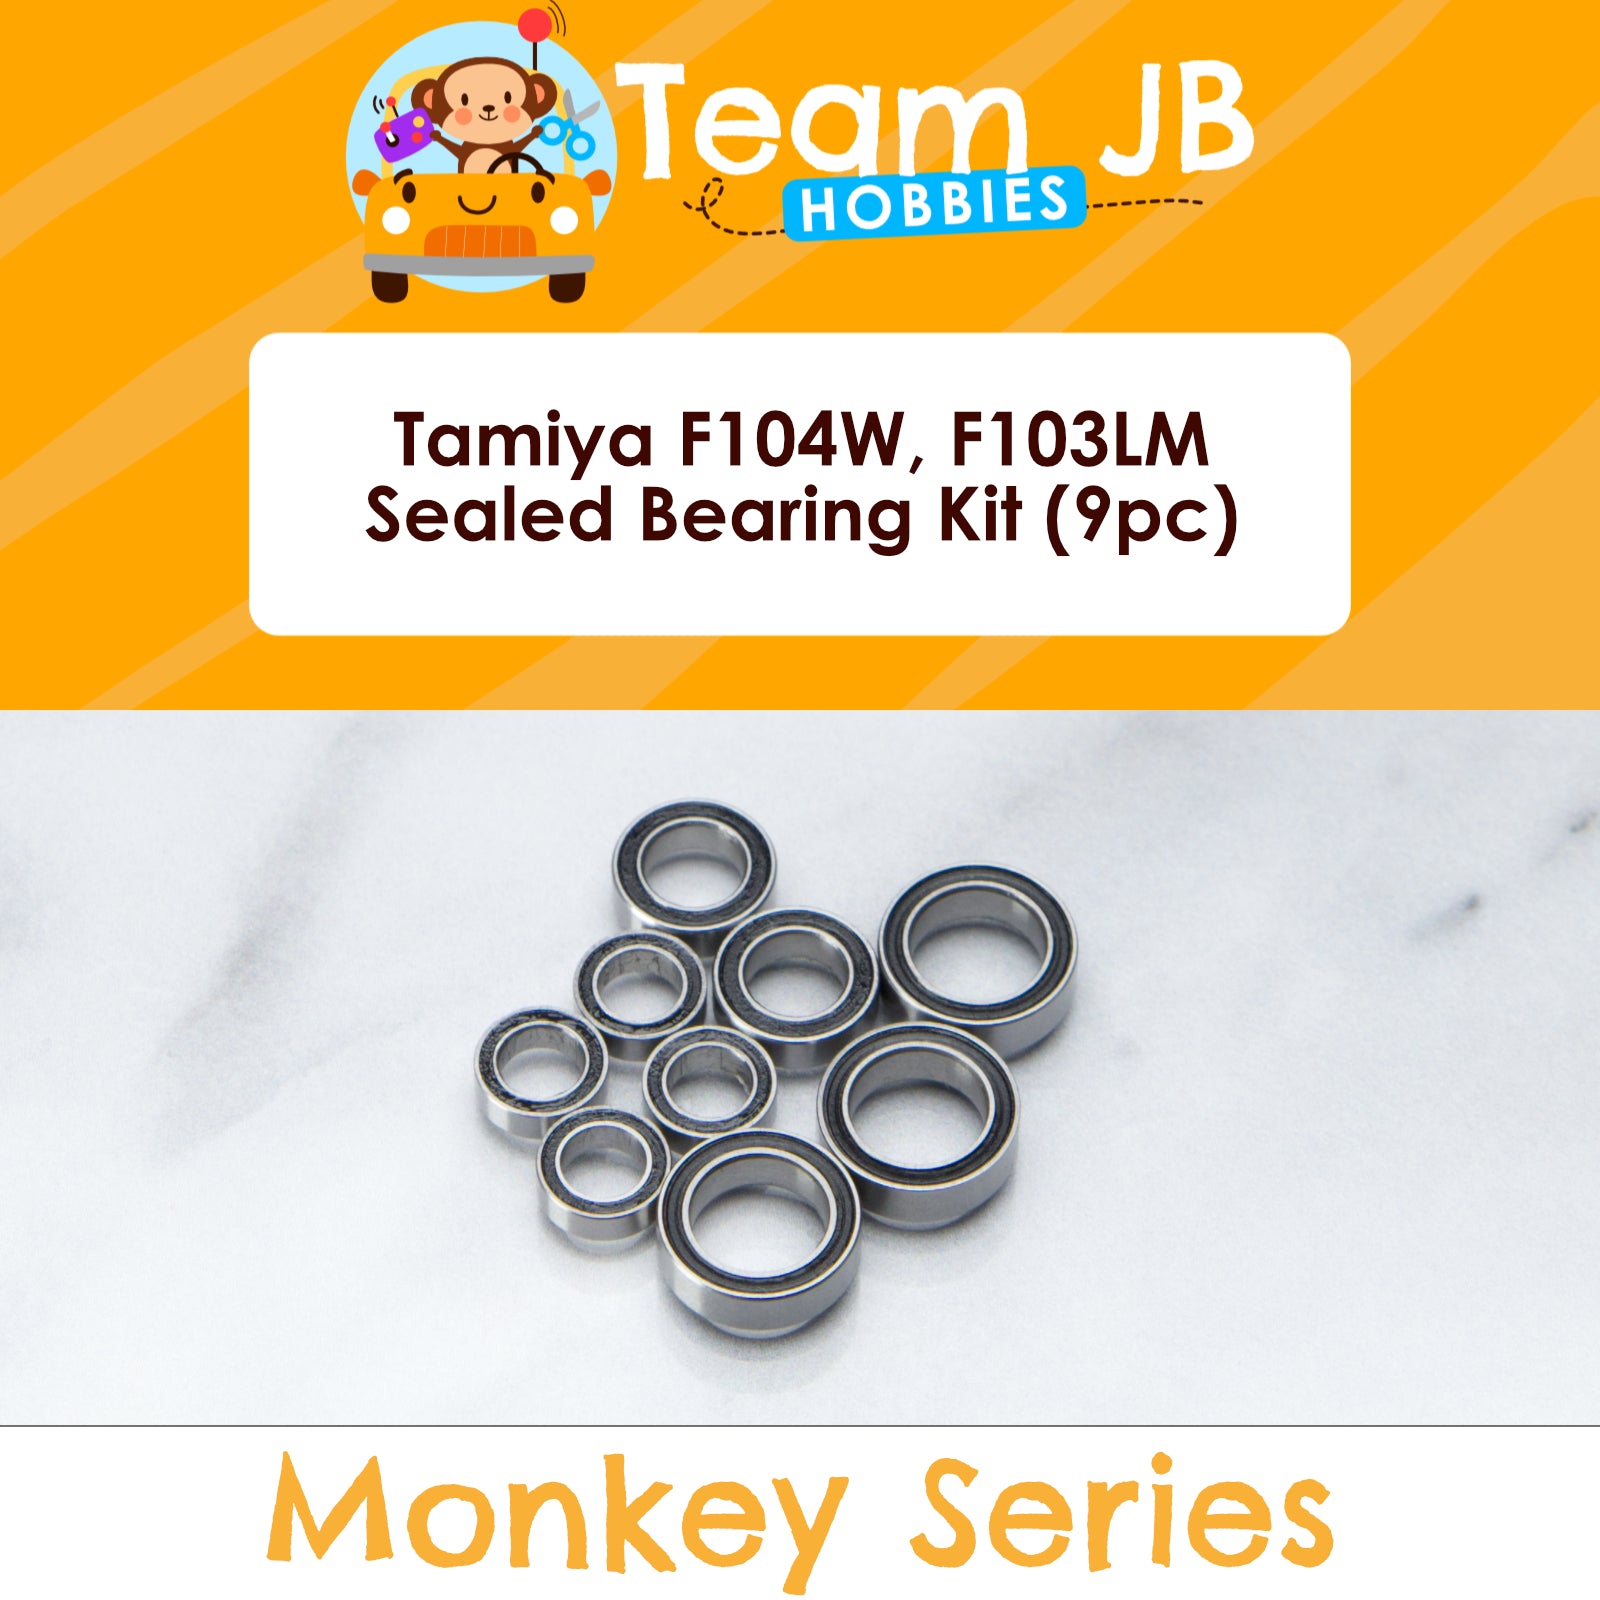 Tamiya F104W, F103LM - Sealed Bearing Kit